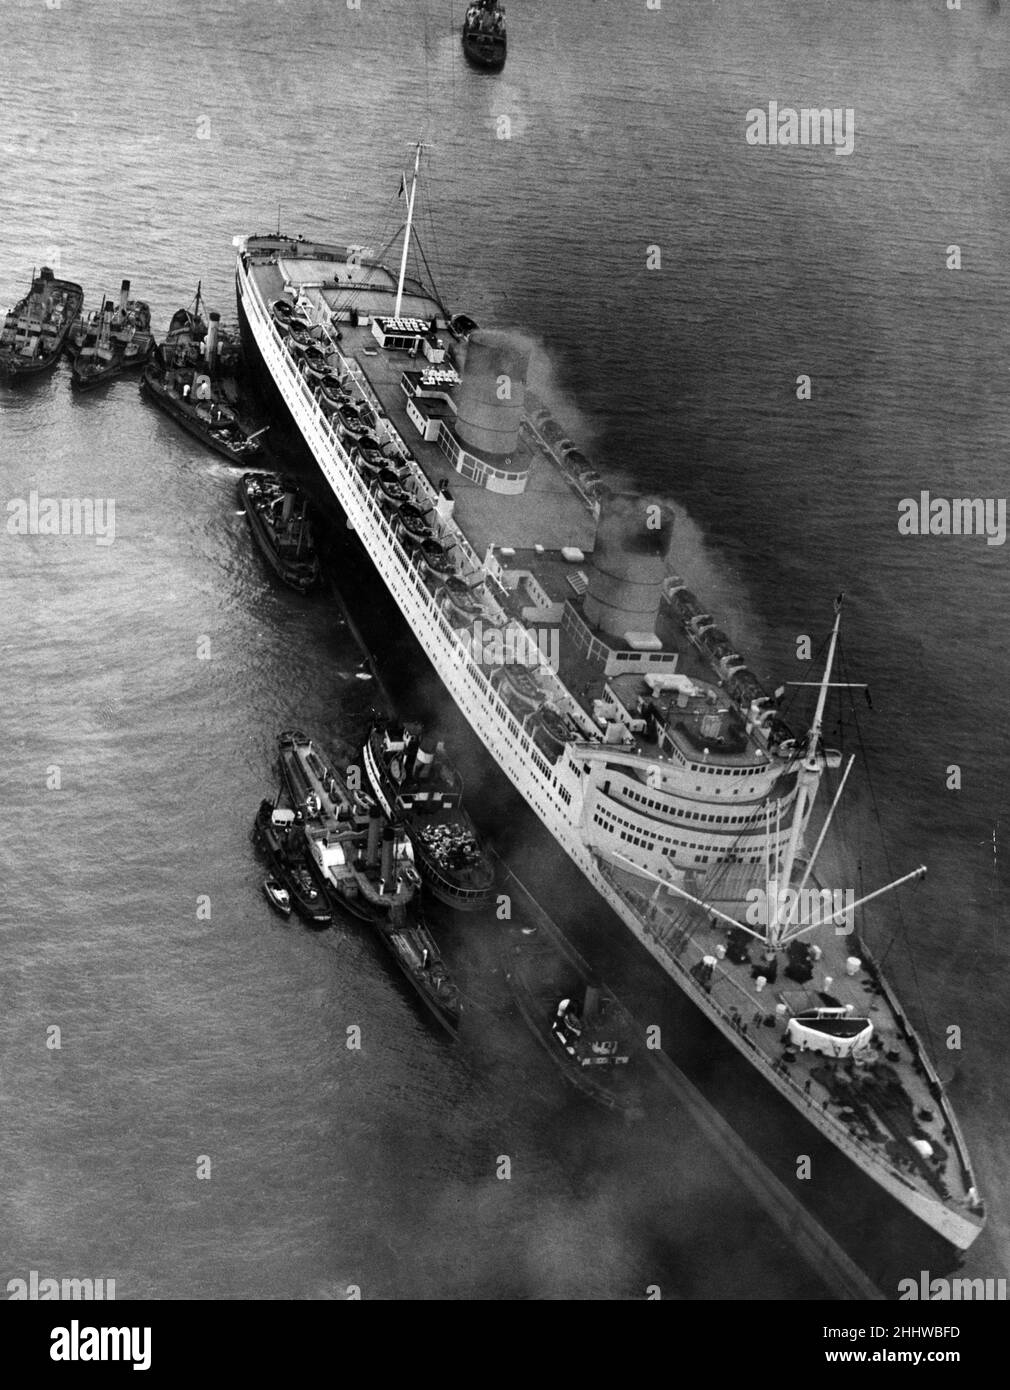 RMS Queen Elizabeth, paquebot exploité par la Cunard Line.Elle est entrée en service pour la première fois en février 1940 comme navire de la Seconde Guerre mondiale, et ce n'est qu'en octobre 1946 qu'elle a servi dans son rôle prévu comme navire de mer.Sur la photo.RMS la reine Elizabeth s'est mise en erbe dans les eaux de Southampton, le 15th avril 1947. Banque D'Images